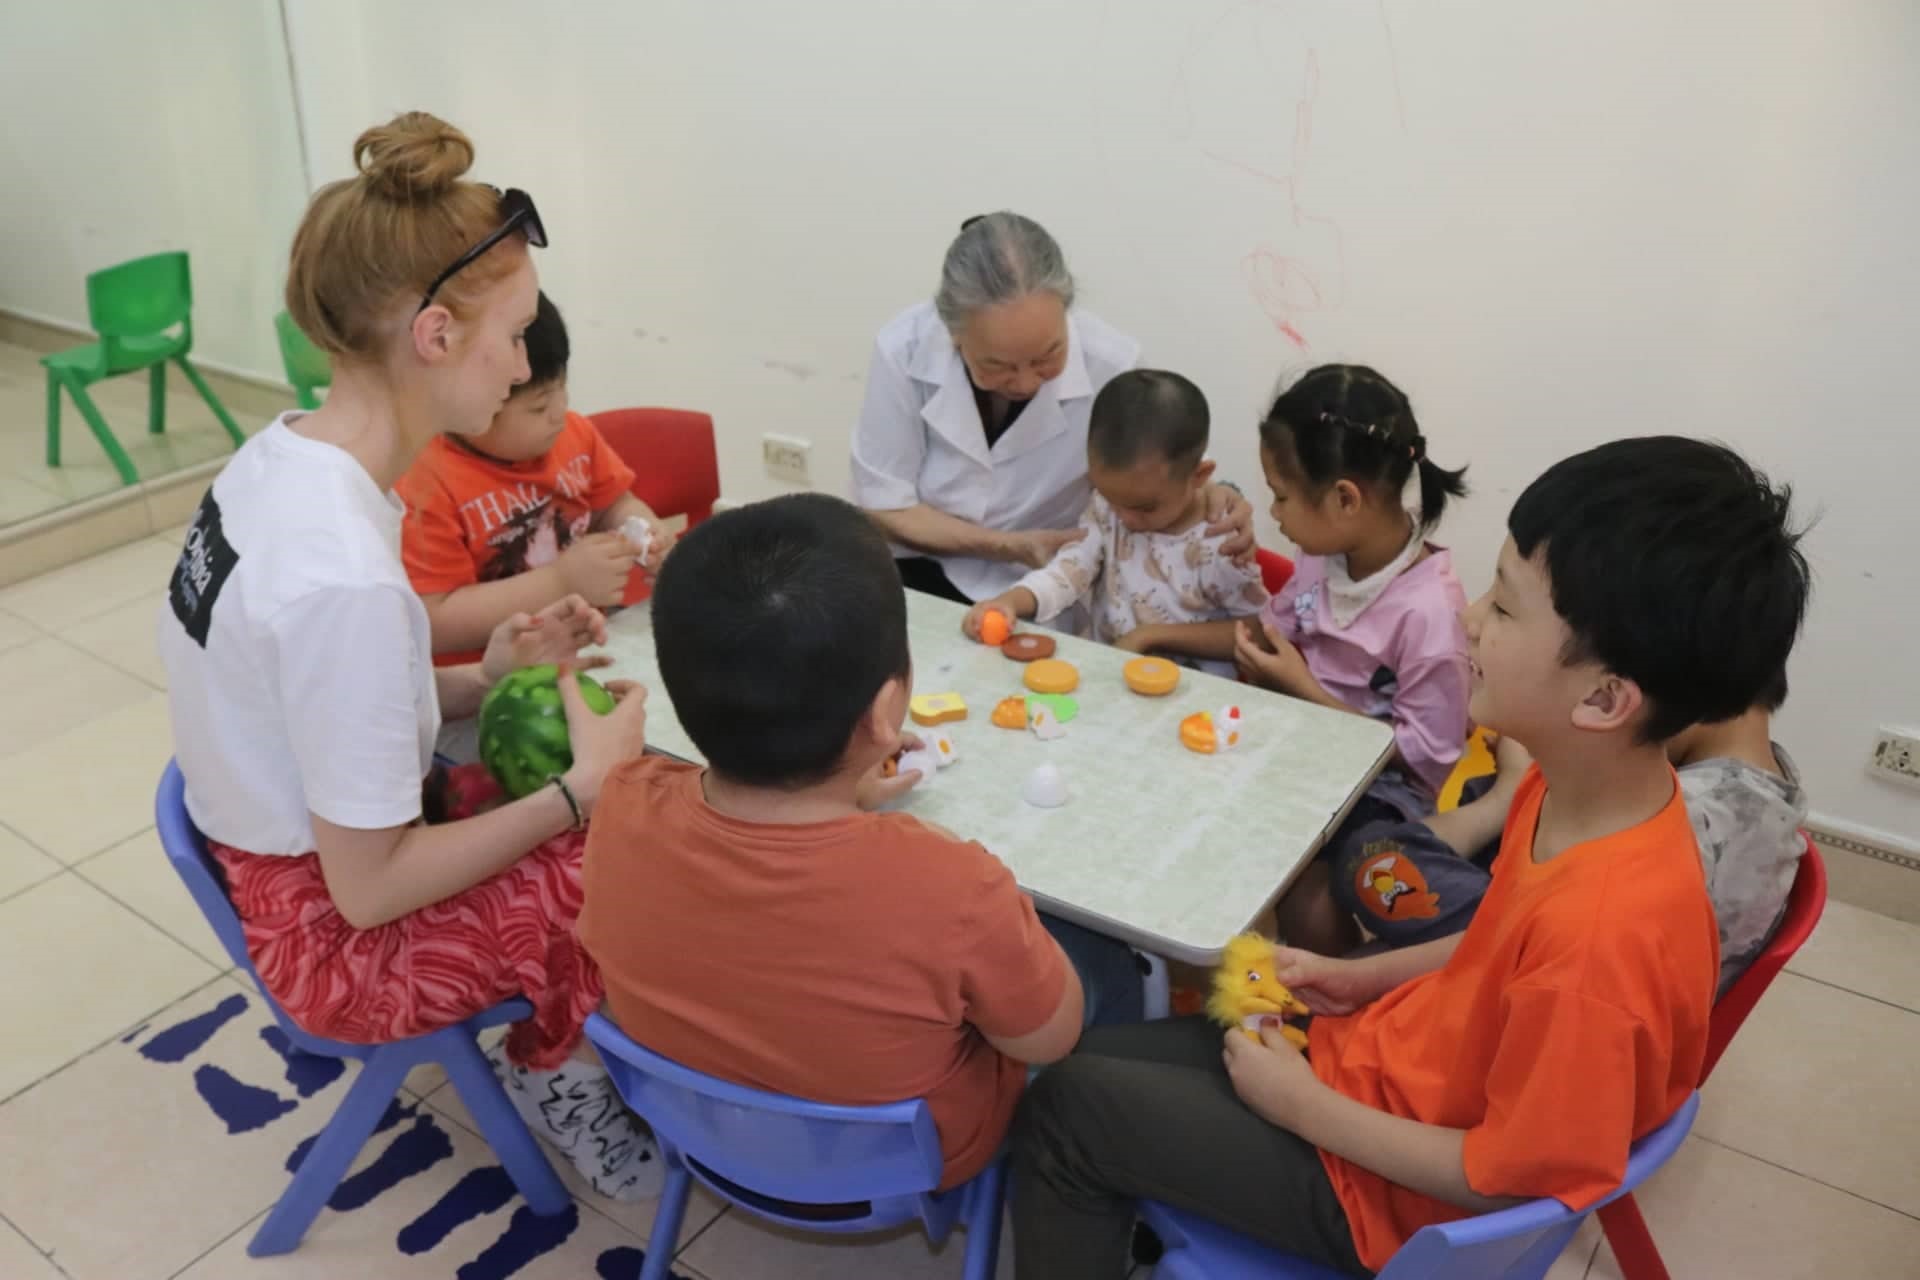 Trung tâm Hy Vọng đã tiếp nhận và giúp đỡ cho gần 500 trẻ em bị khiếm khuyết, có hoàn cảnh khó khăn.